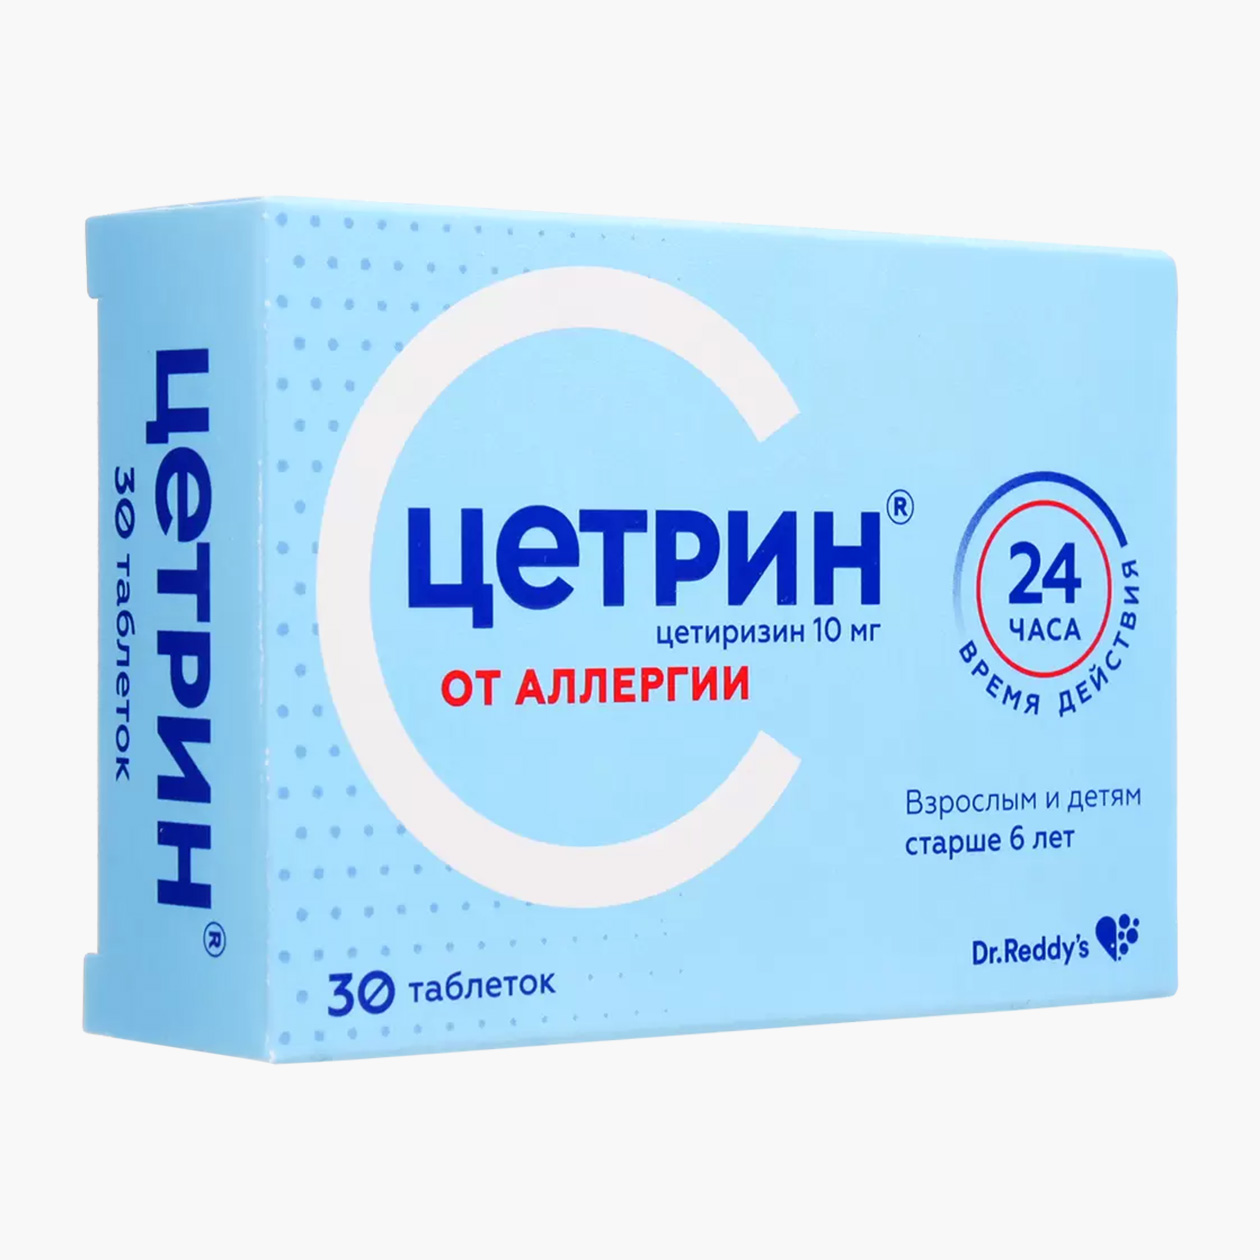 Противоаллергический препарат второго поколения — более безопасный. Источник: eapteka.ru